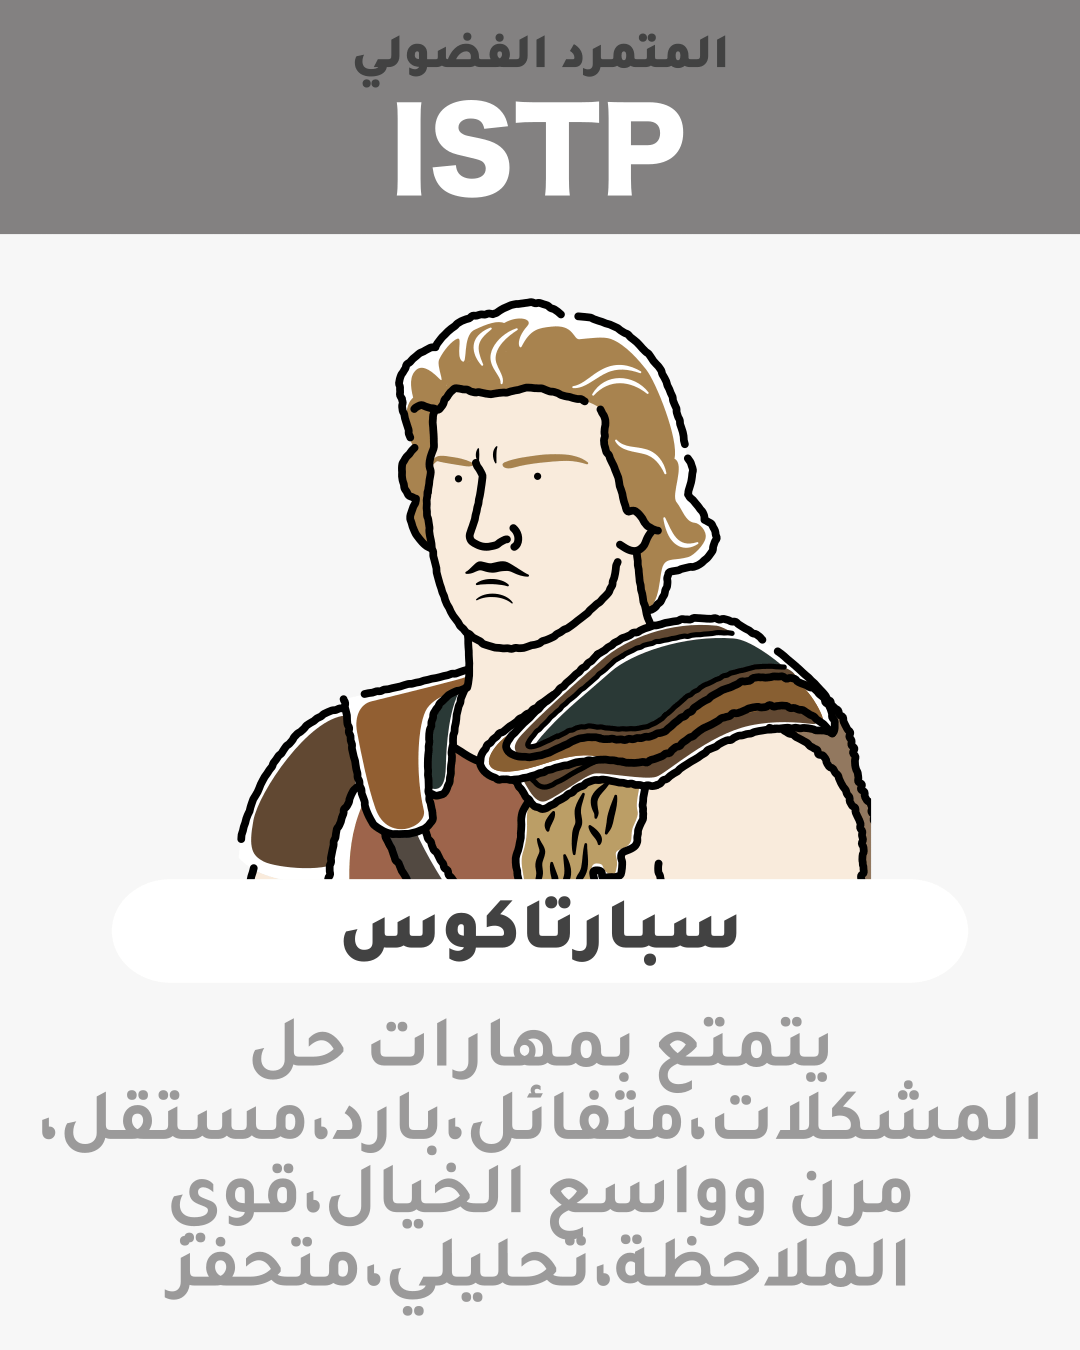 سبارتاكوس - ISTP